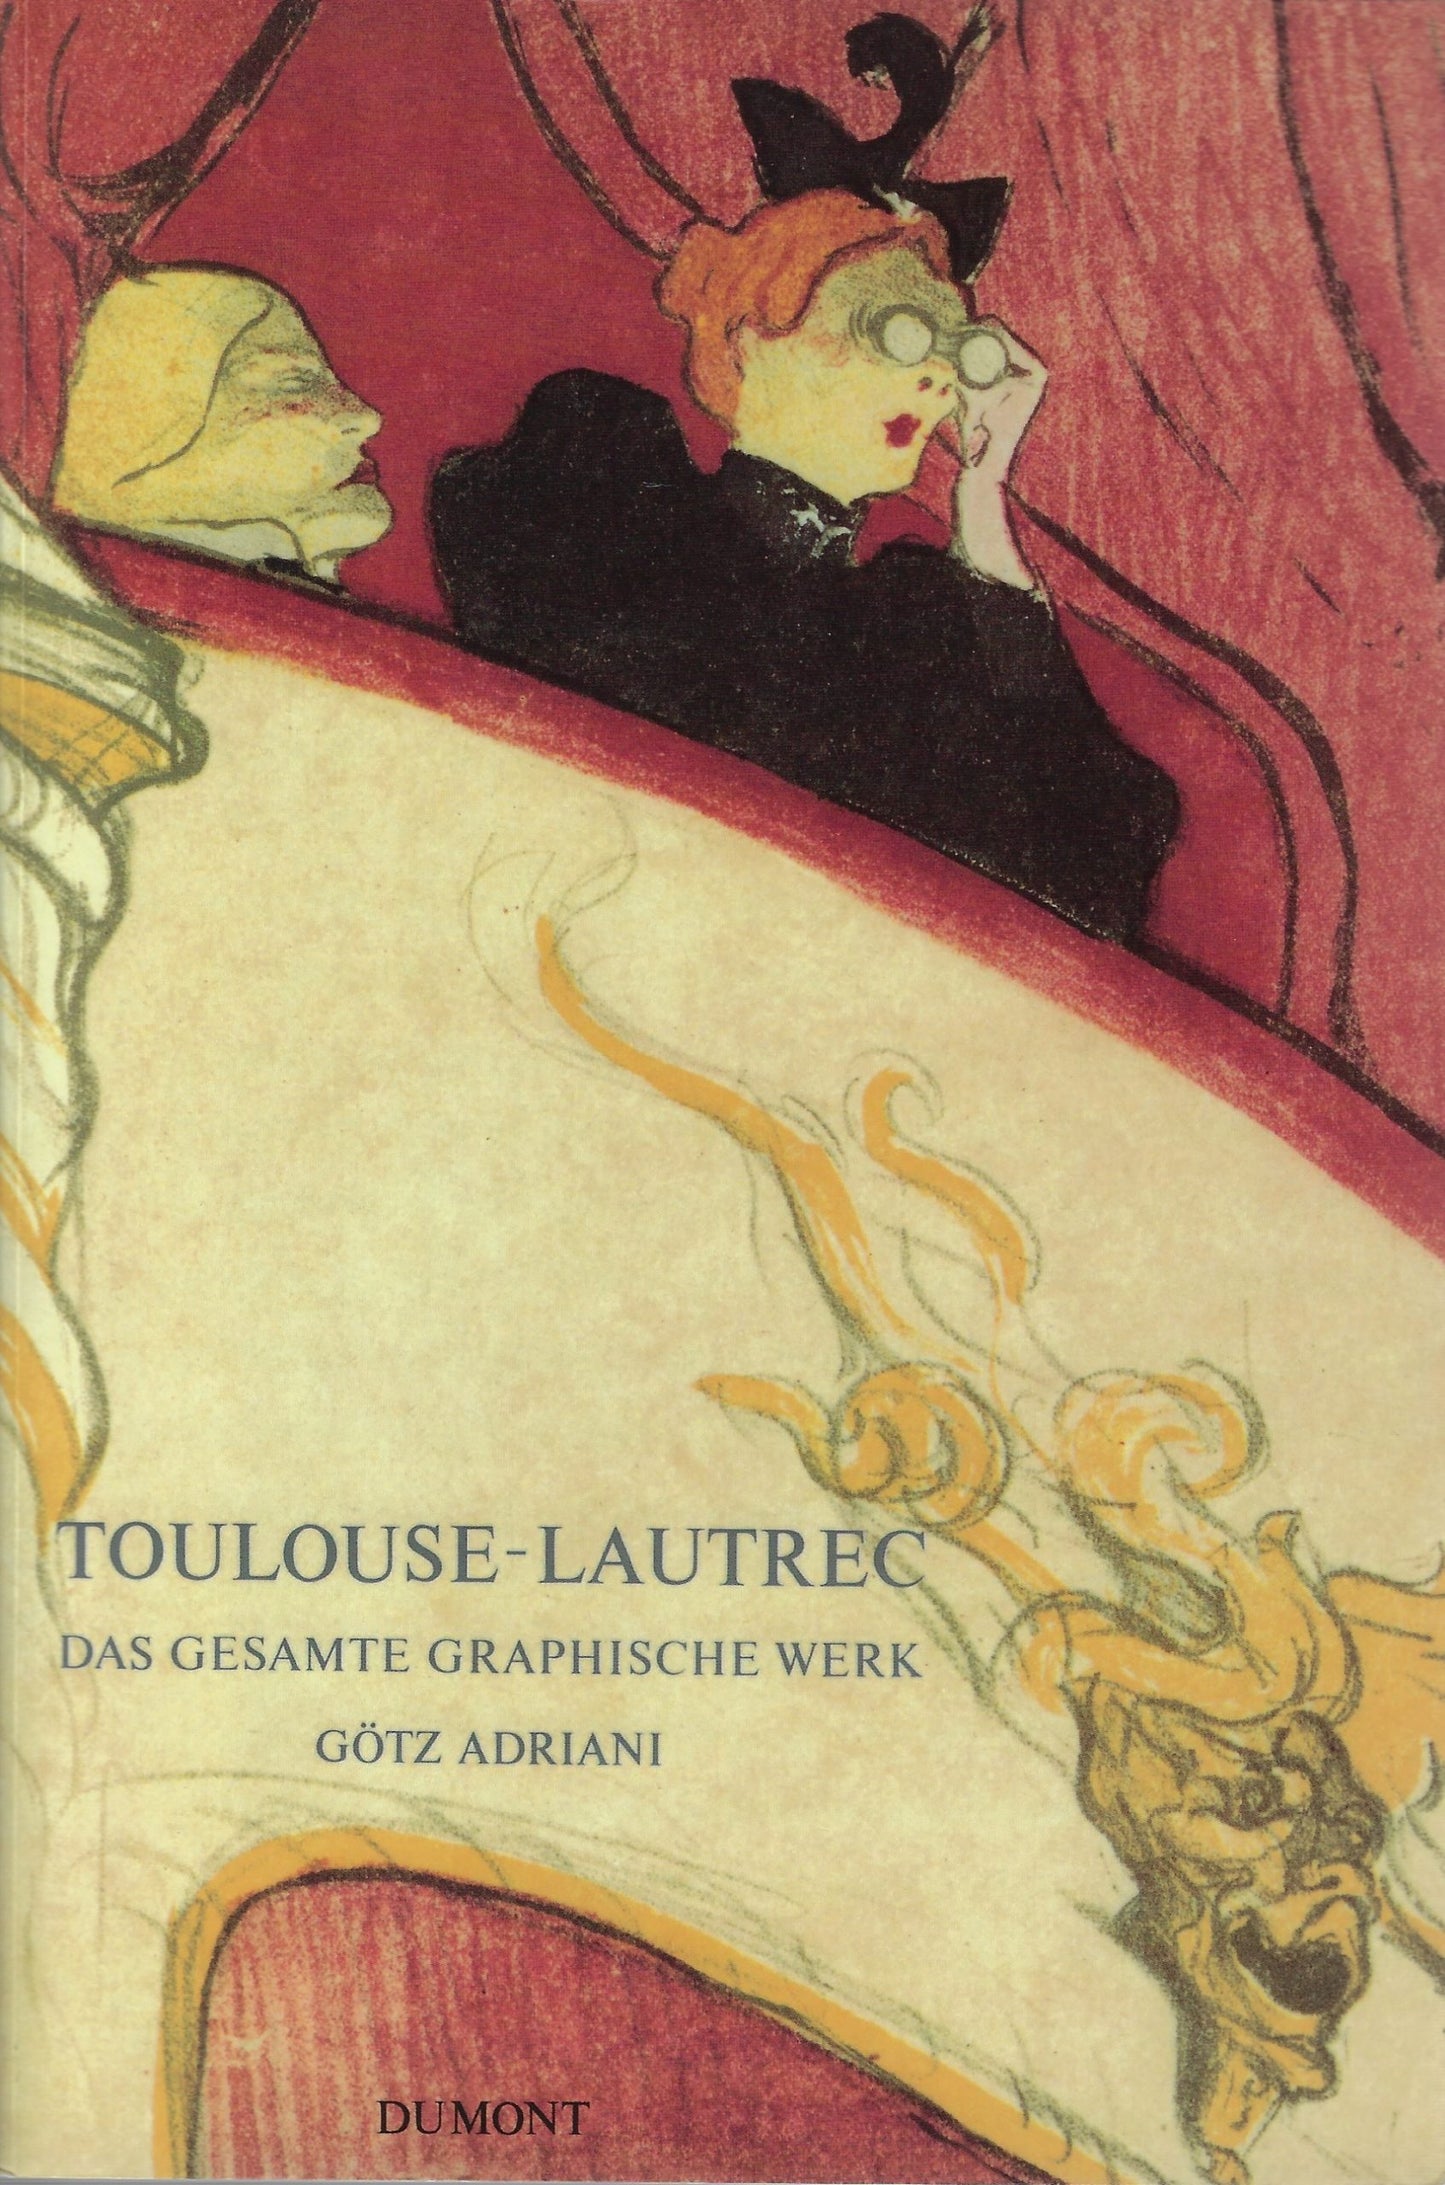 Toulouse-Lautrec Das gesamte graphische Werk